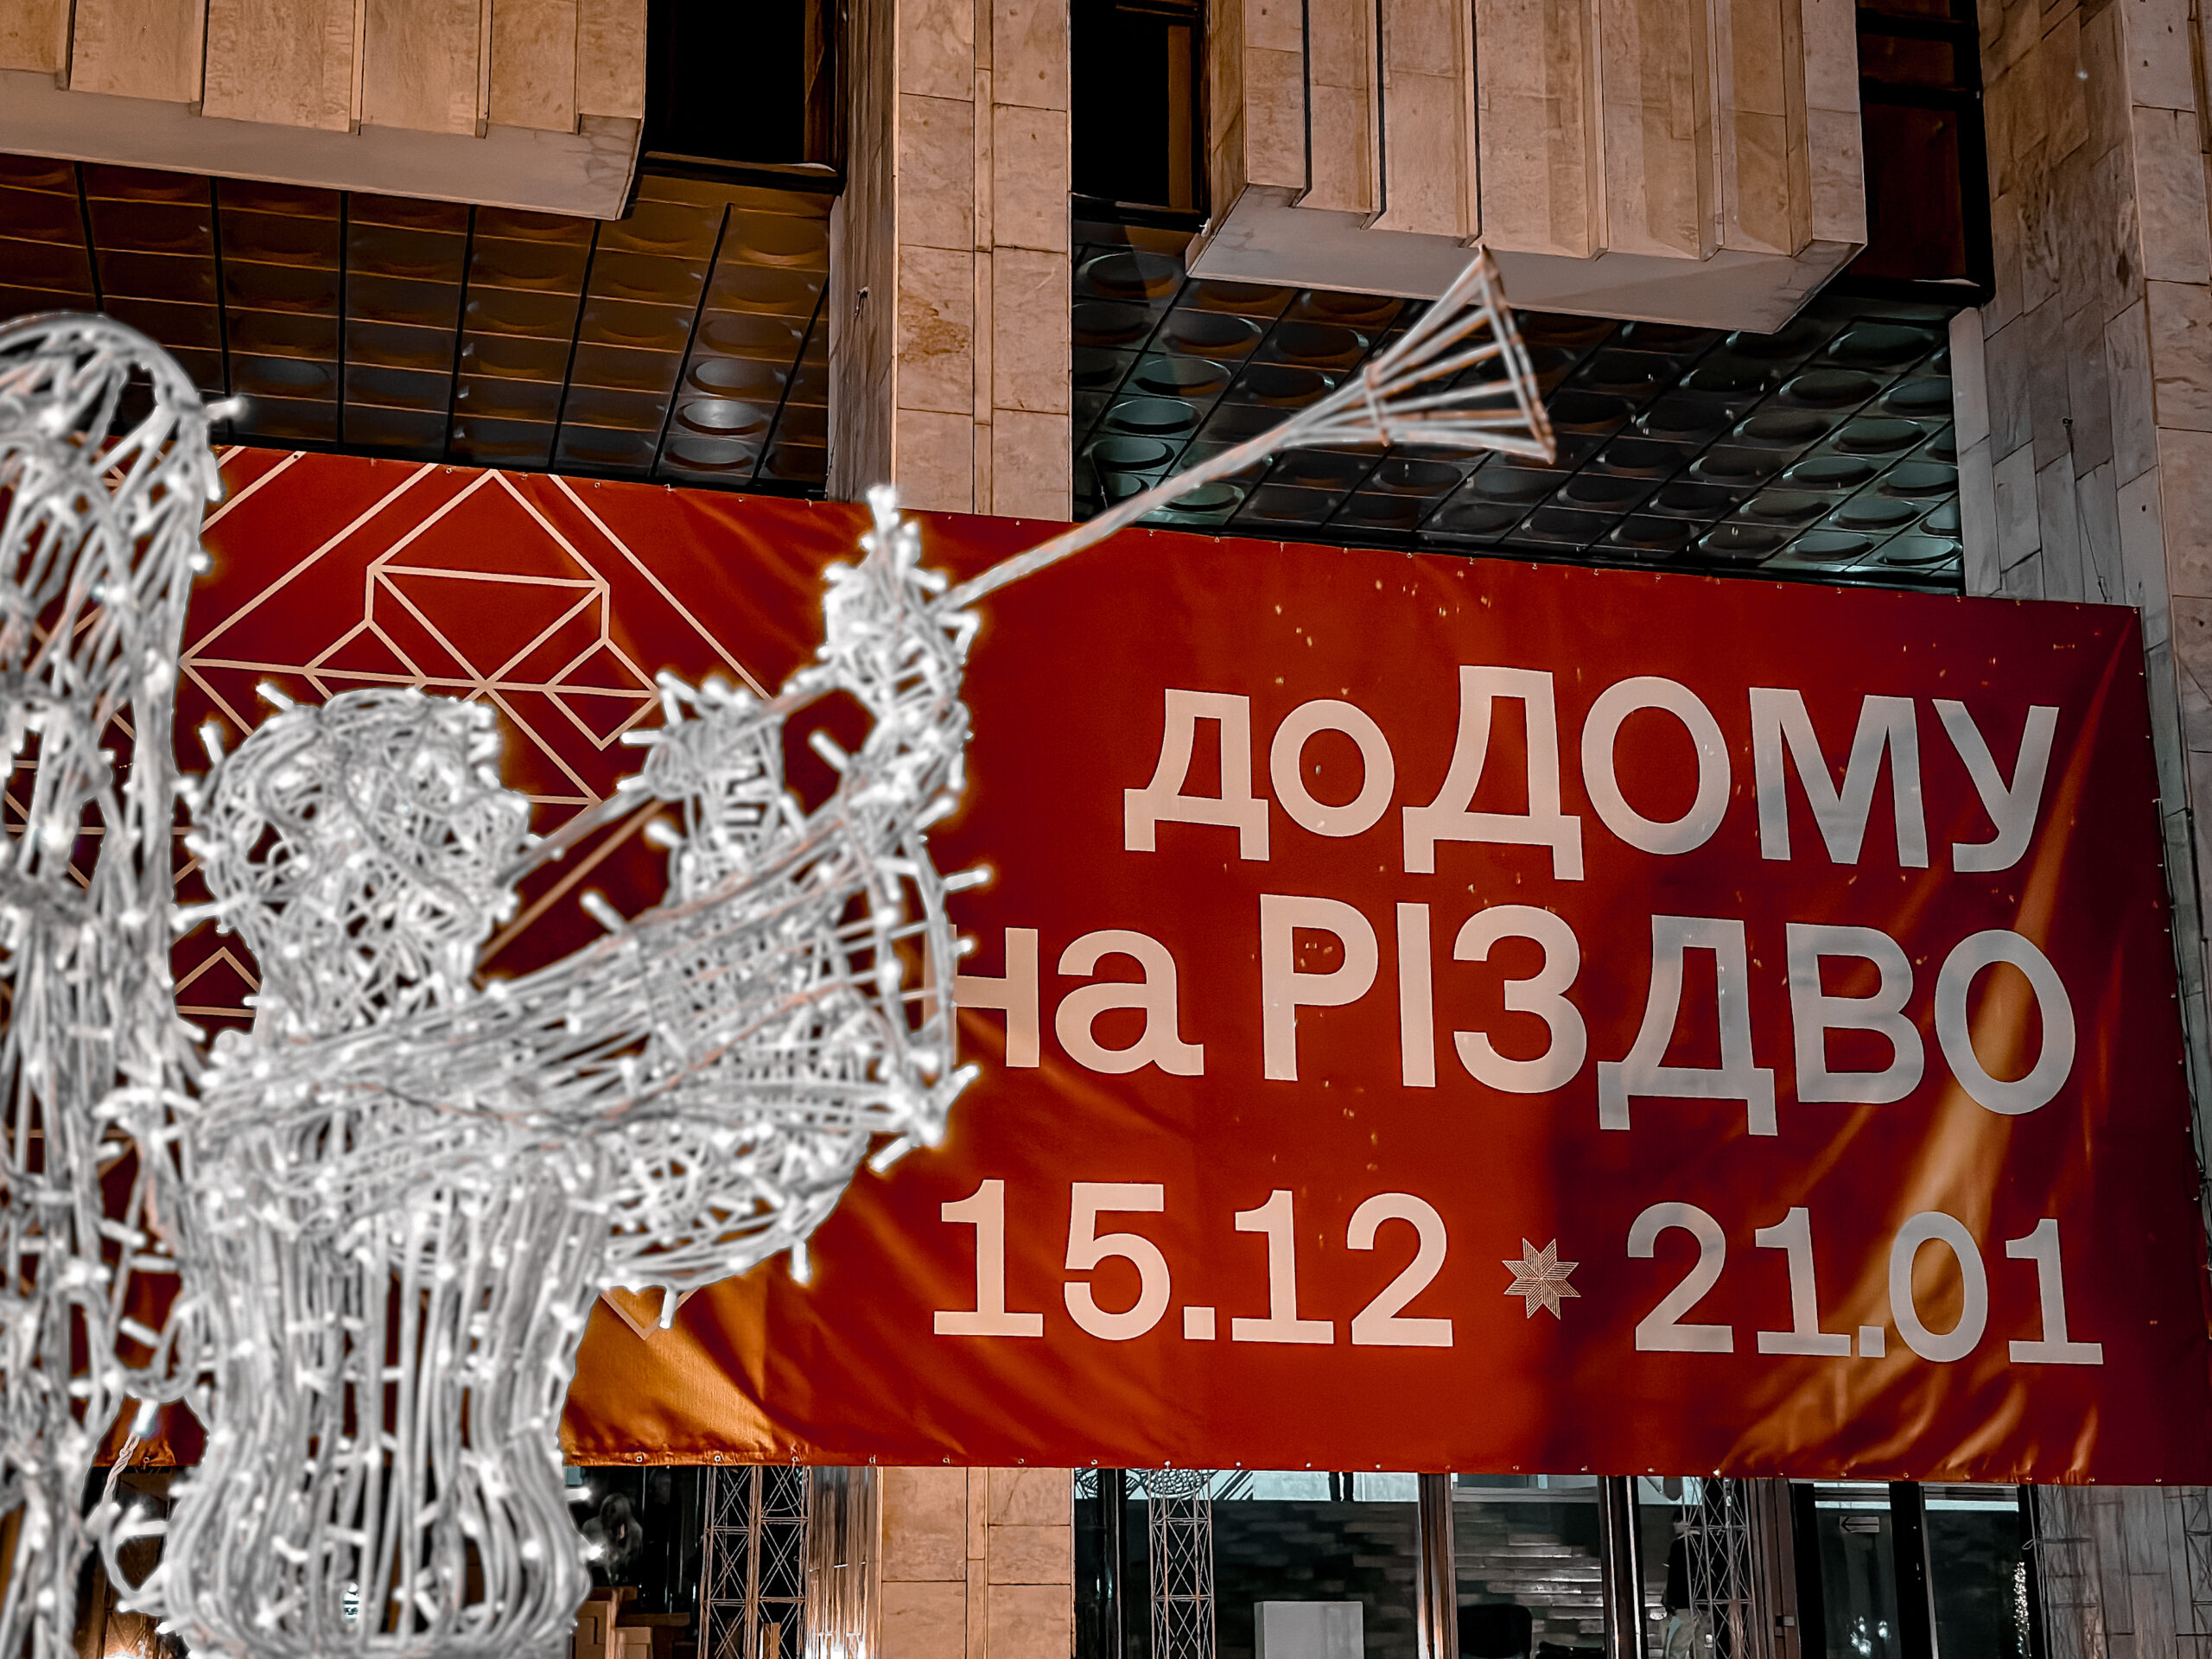 У Києві відкрилась виставка «ДоДому на Різдво» (ФОТО)